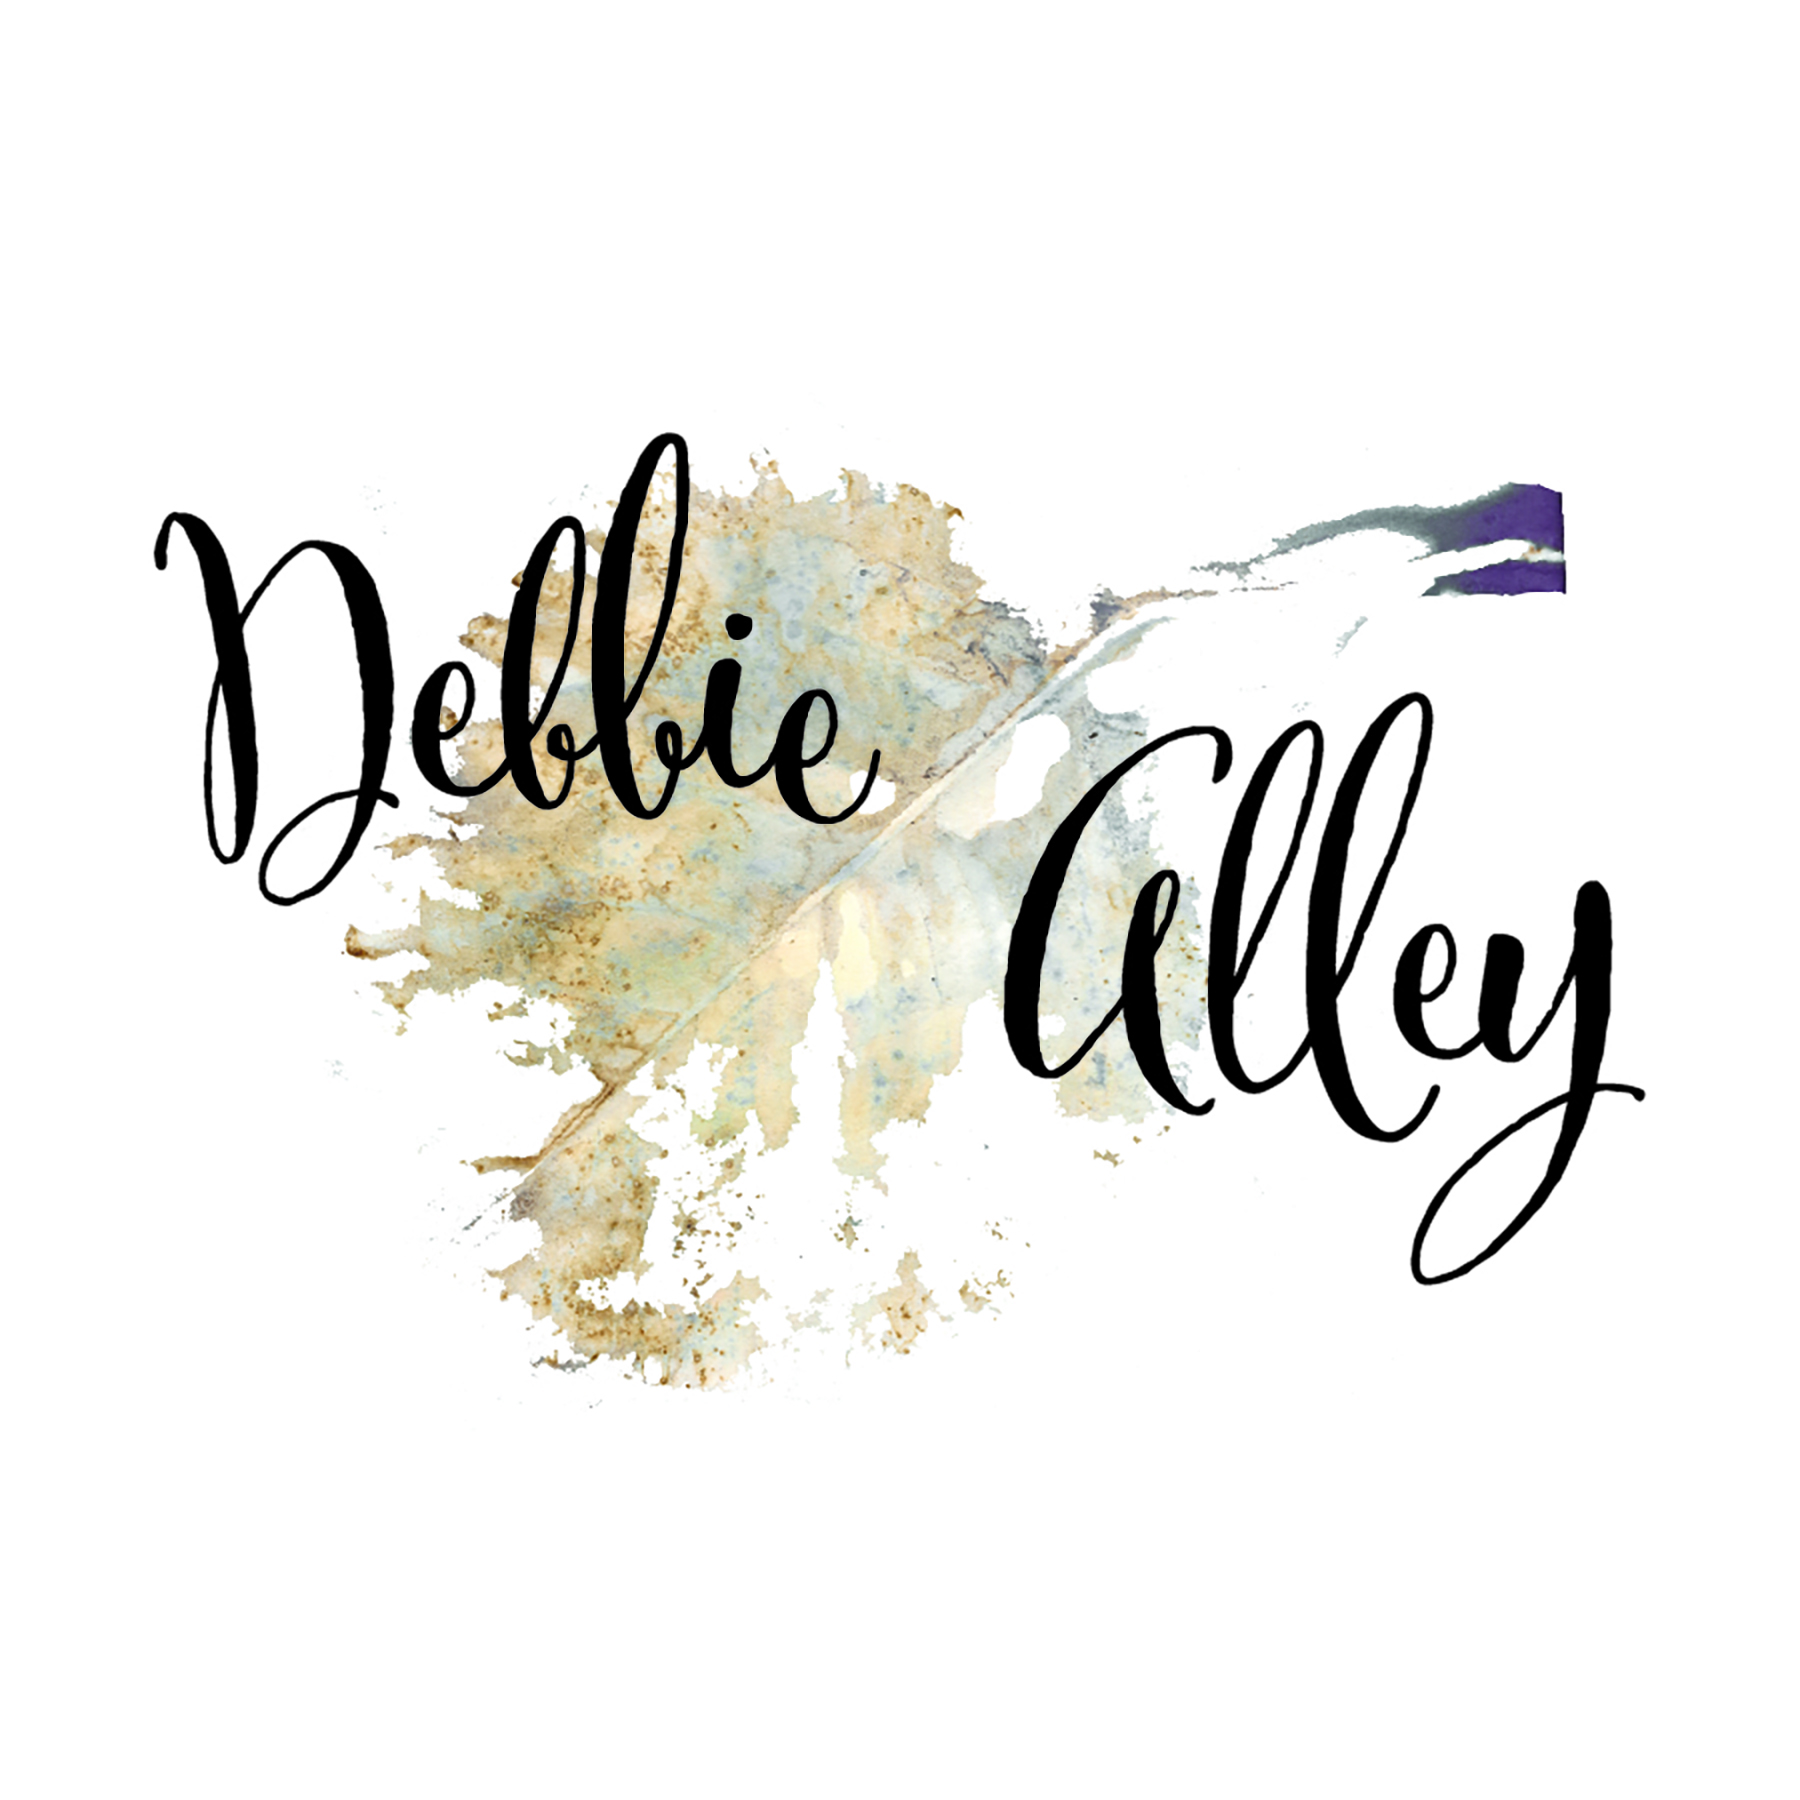 Debbie Alley